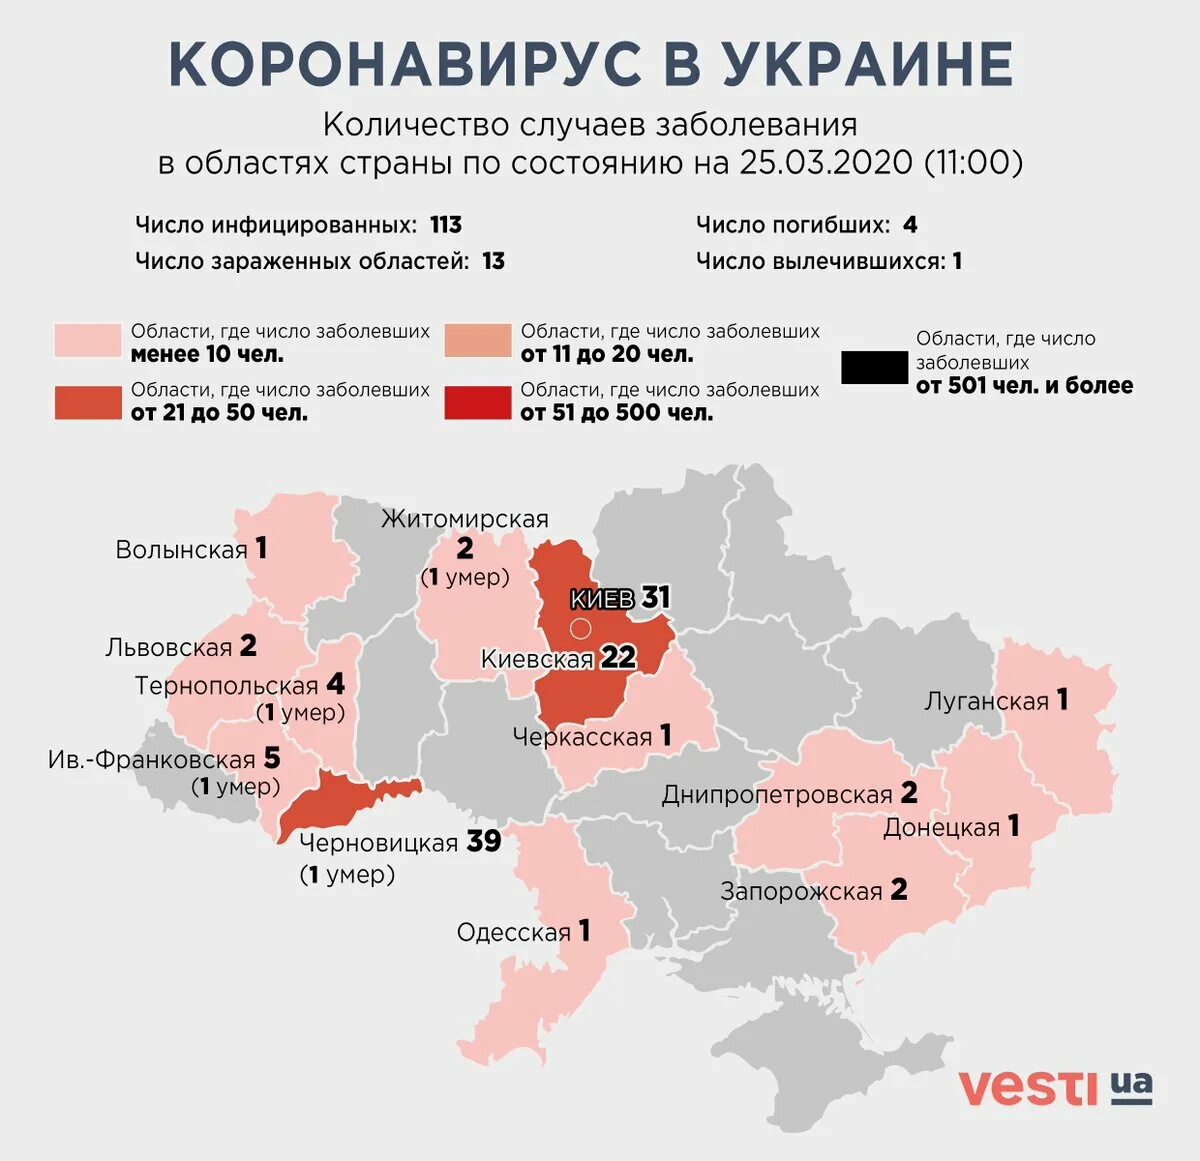 Численность погибших на украине